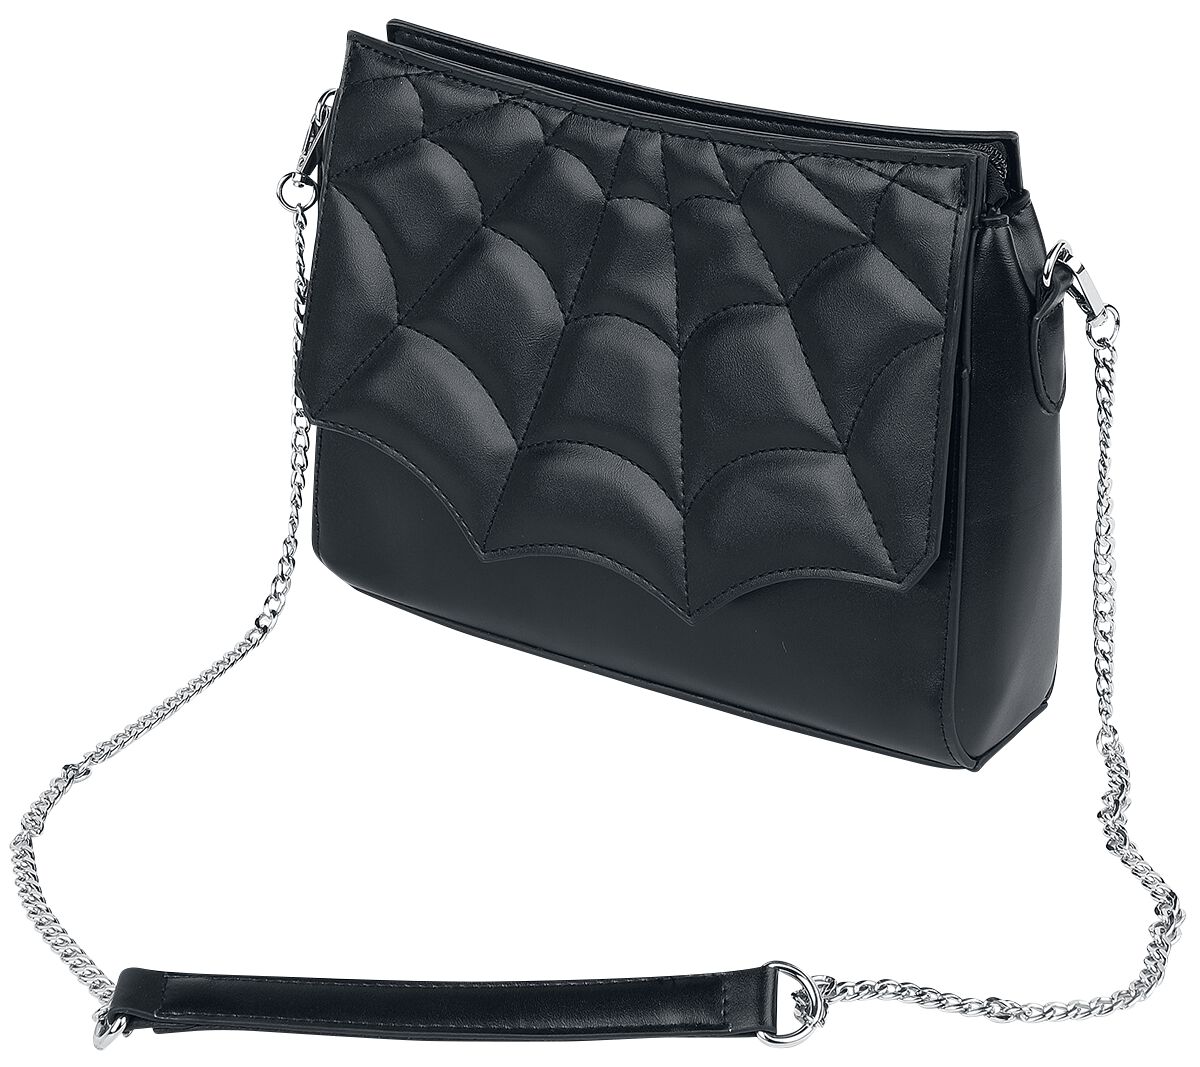 Banned Alternative Mabris Shoulder Bag Handtasche schwarz silberfarben